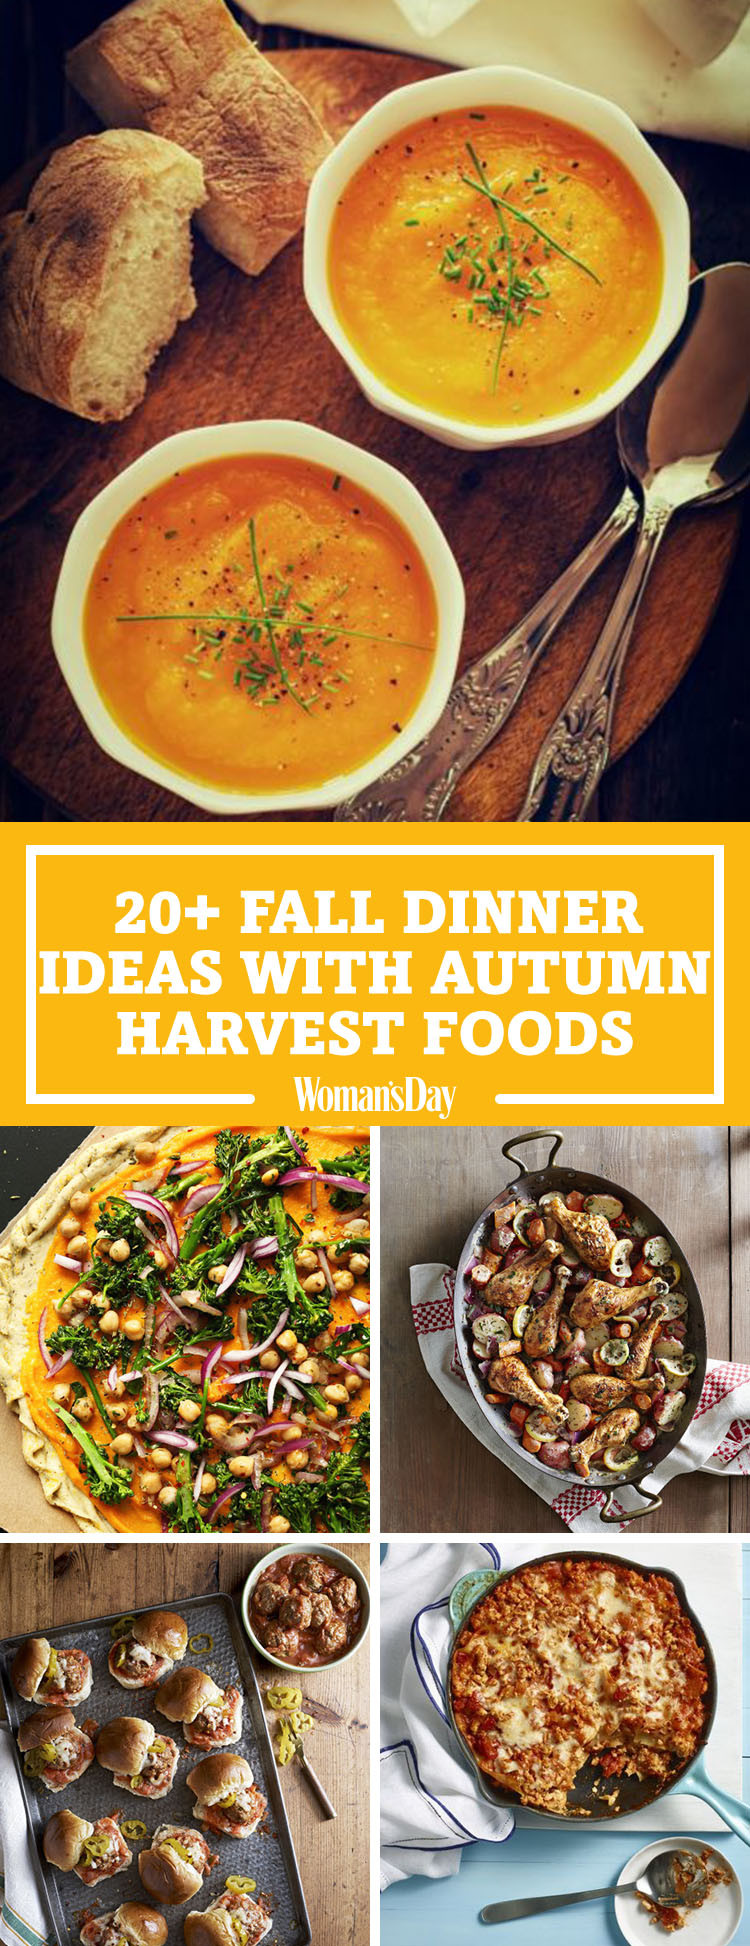 Easy Fall Dinner Recipes
 26 Easy Fall Dinner Ideas Best Dinner Recipes for Autumn